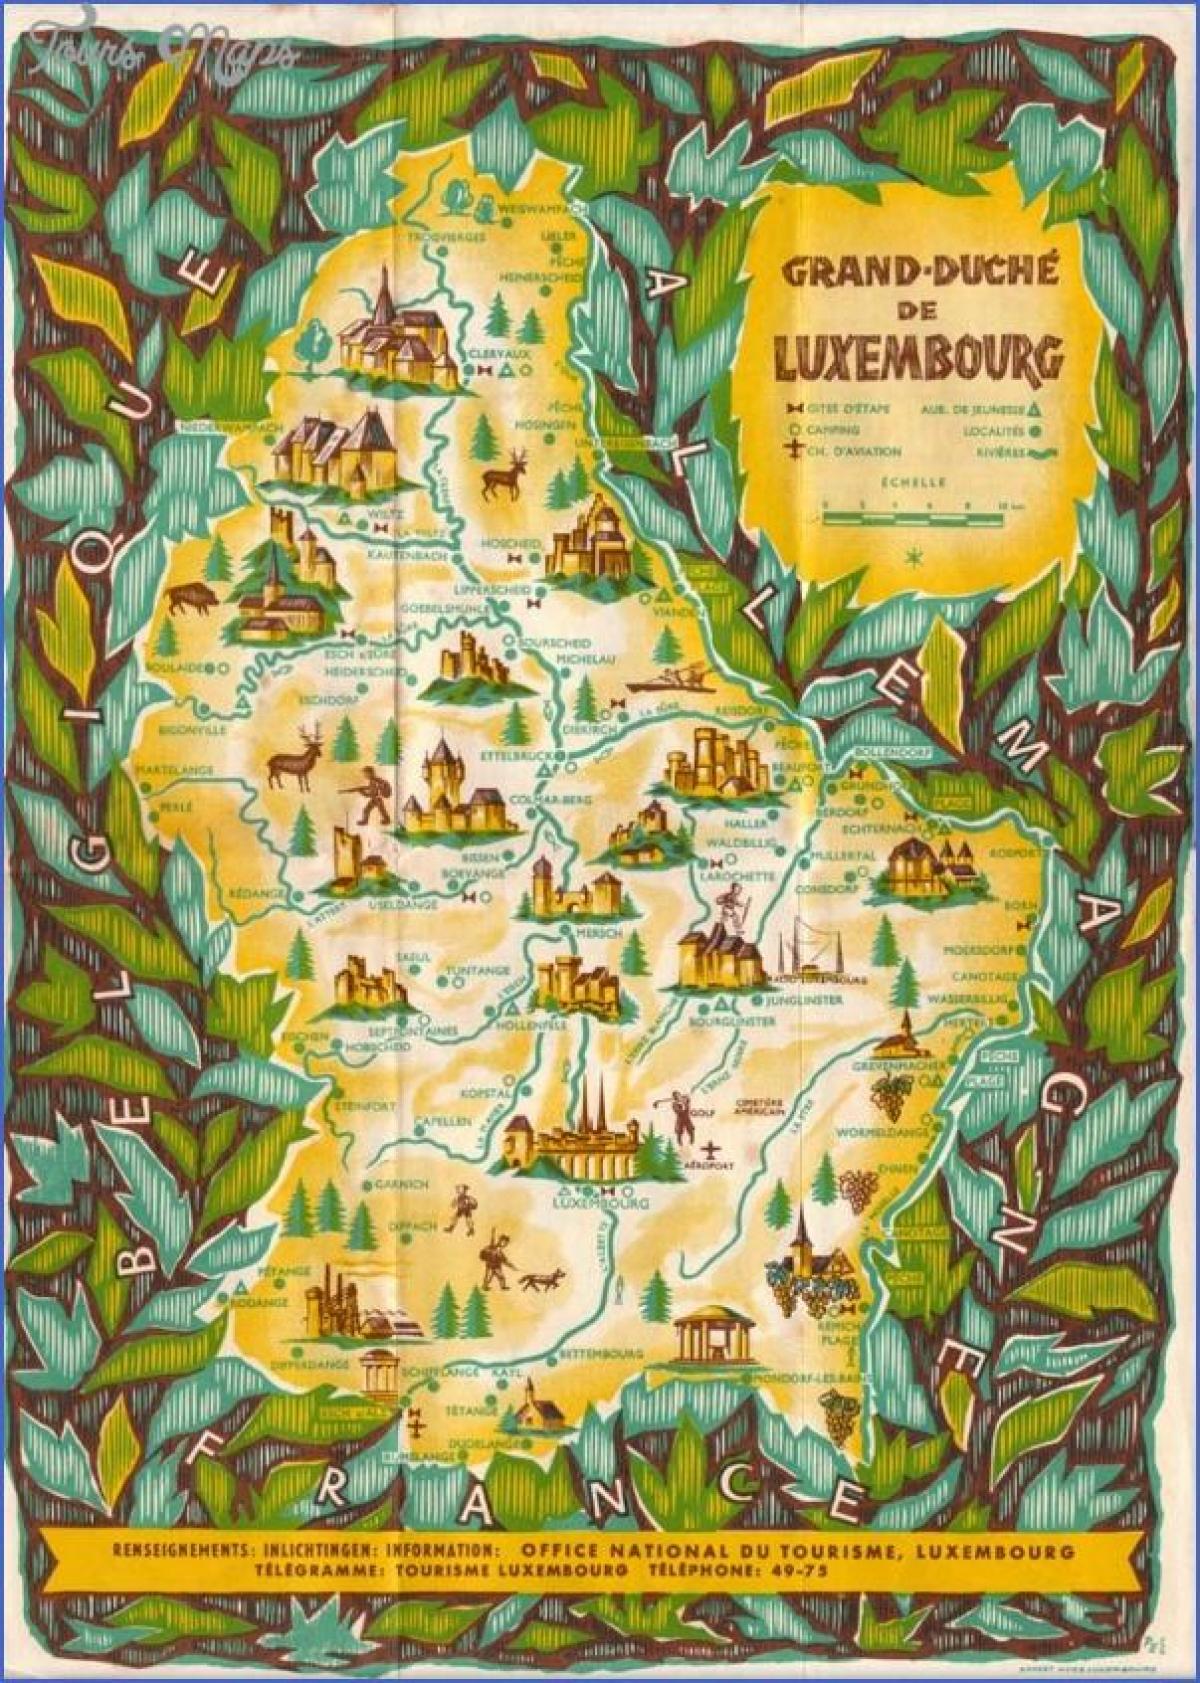 kort af Lúxemborg skoðunarferðir